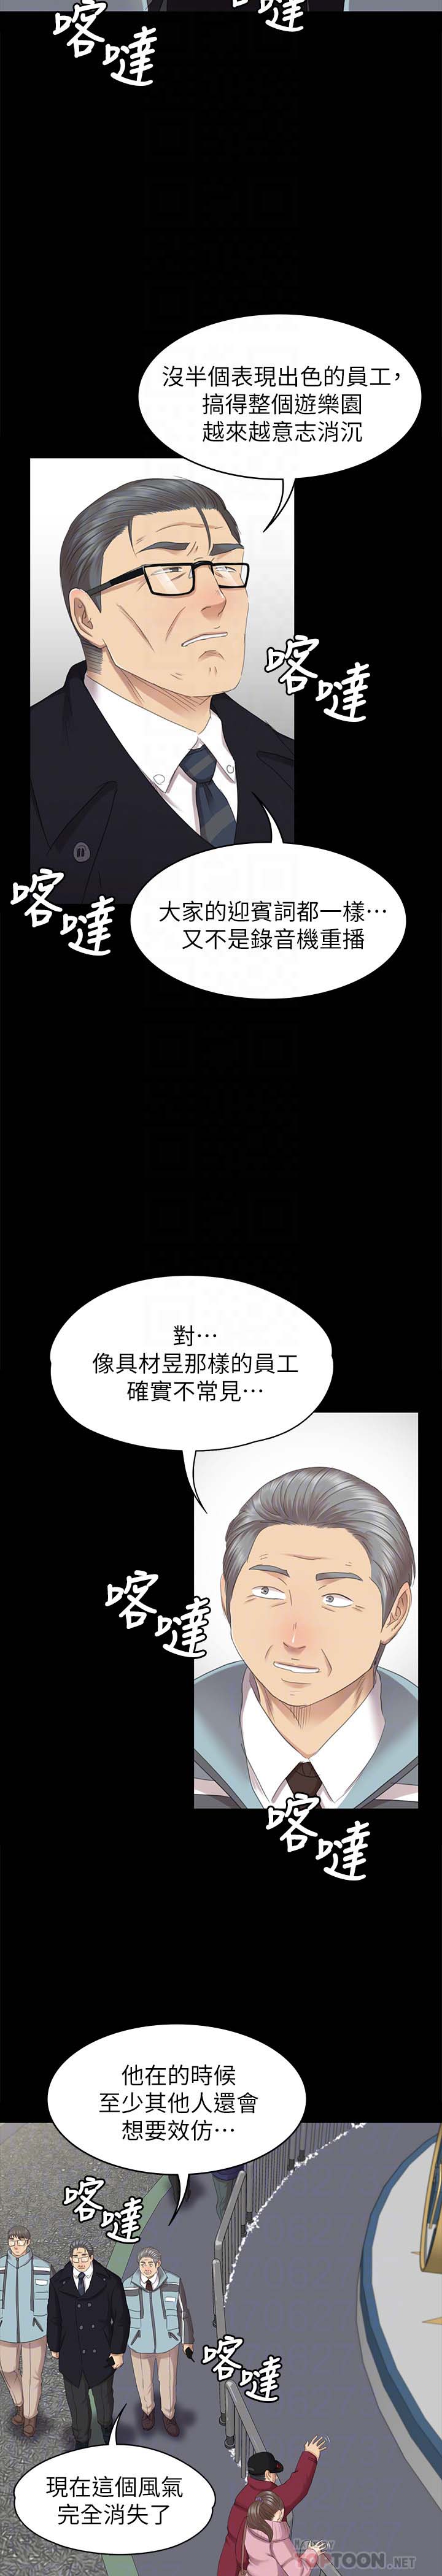 《KTV情人》漫画 第69话-把雪熙培养成歌手